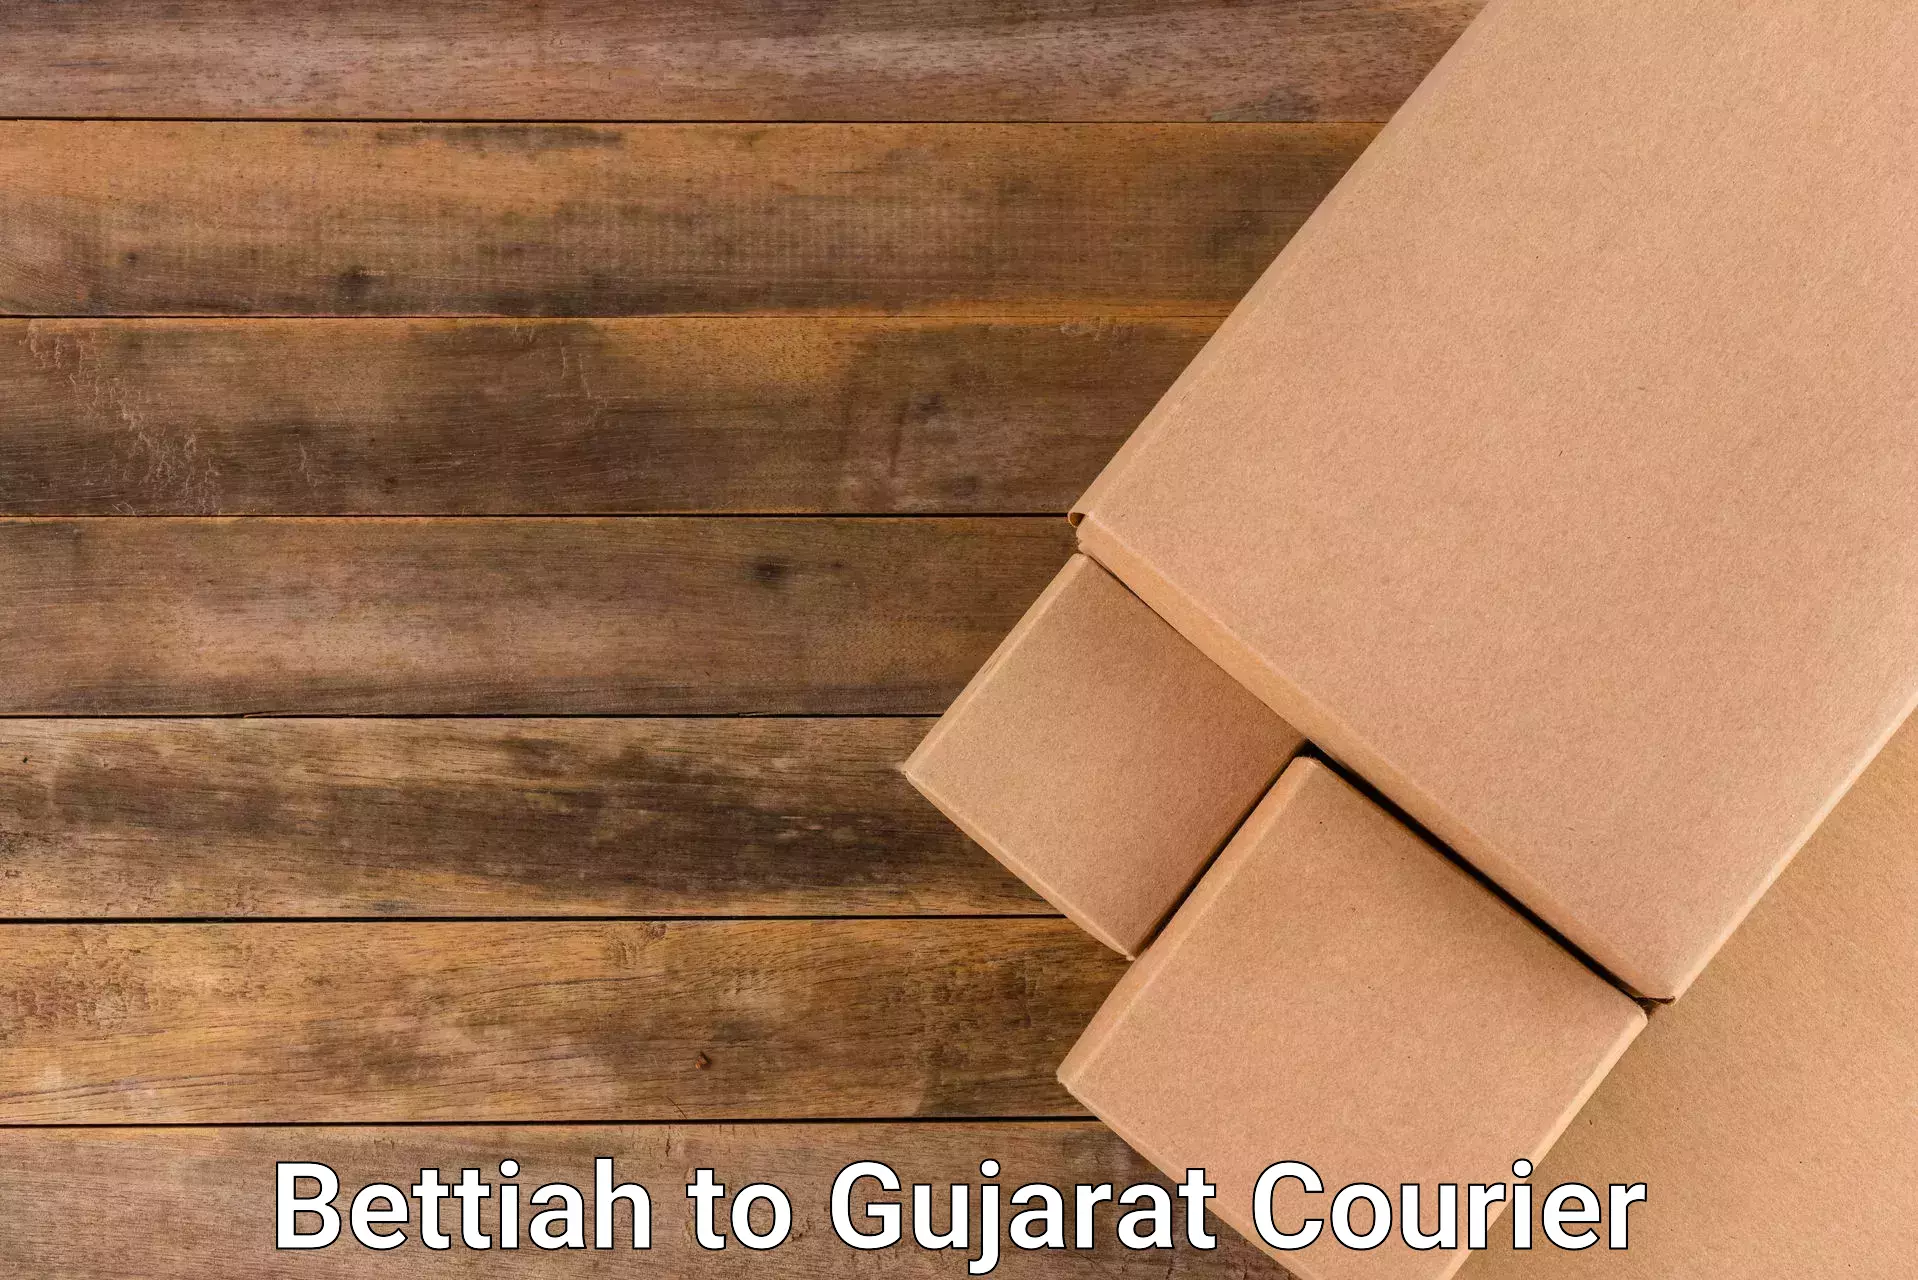 Courier insurance Bettiah to Gujarat